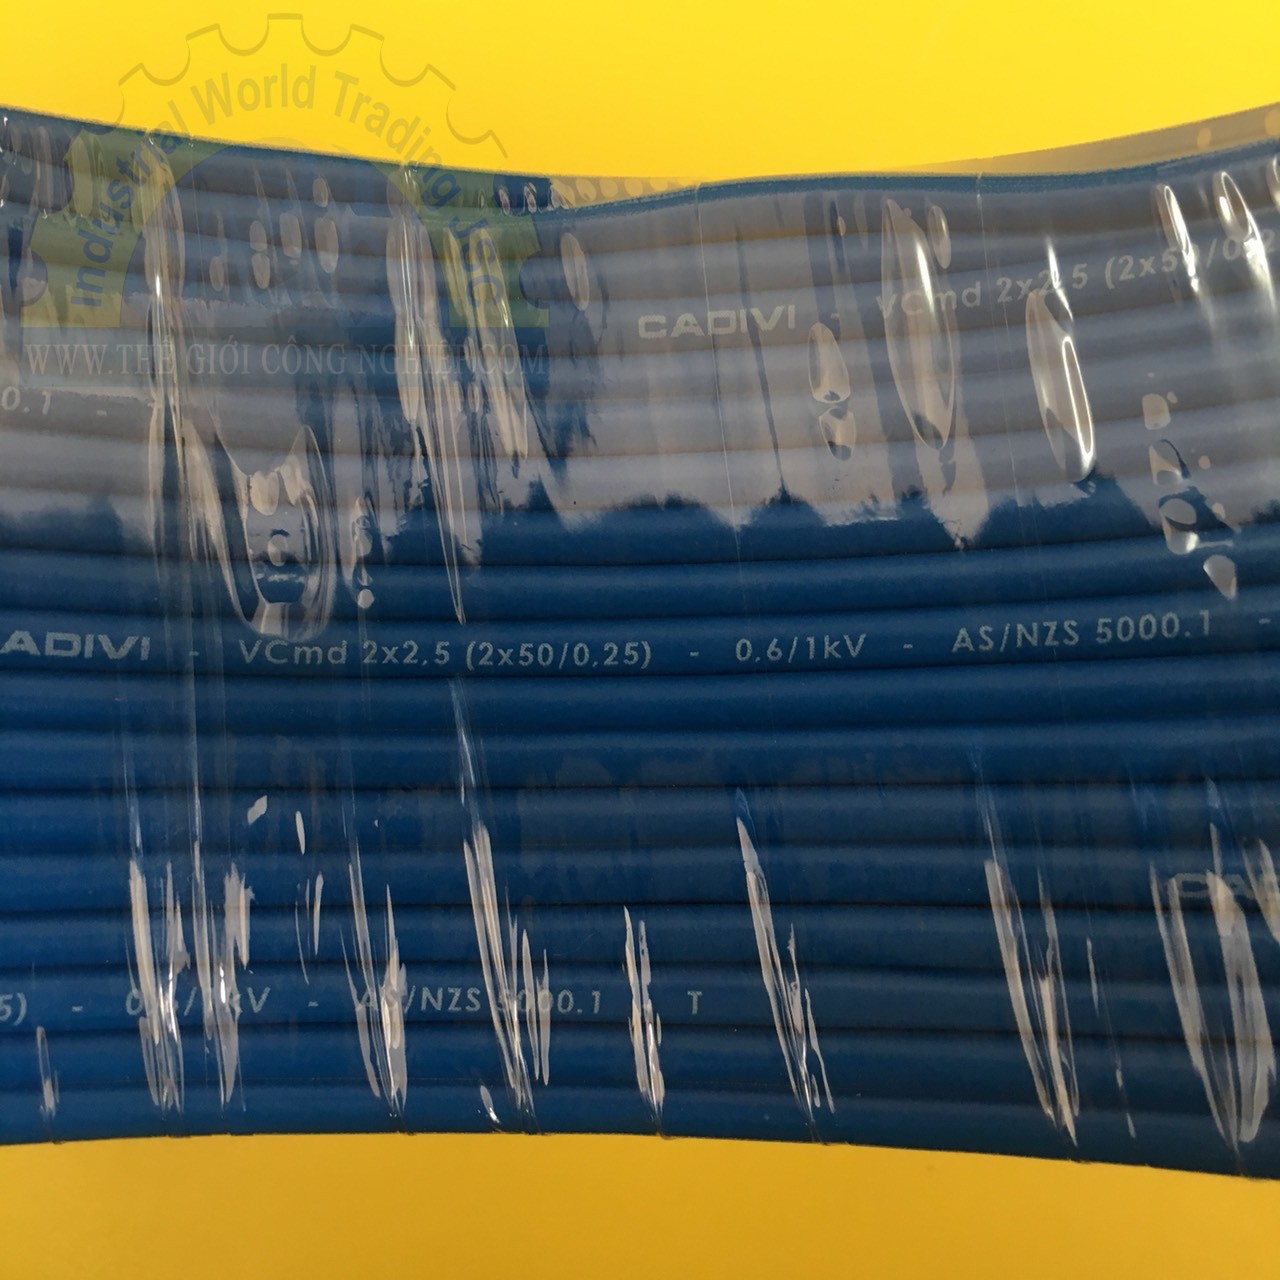 Dây cáp điện đôi mềm (dây dẹp) Vcmd Cadivi 2x2.5 màu xanh, ruột đồng bọc nhựa PVC, cuộn 100 mét